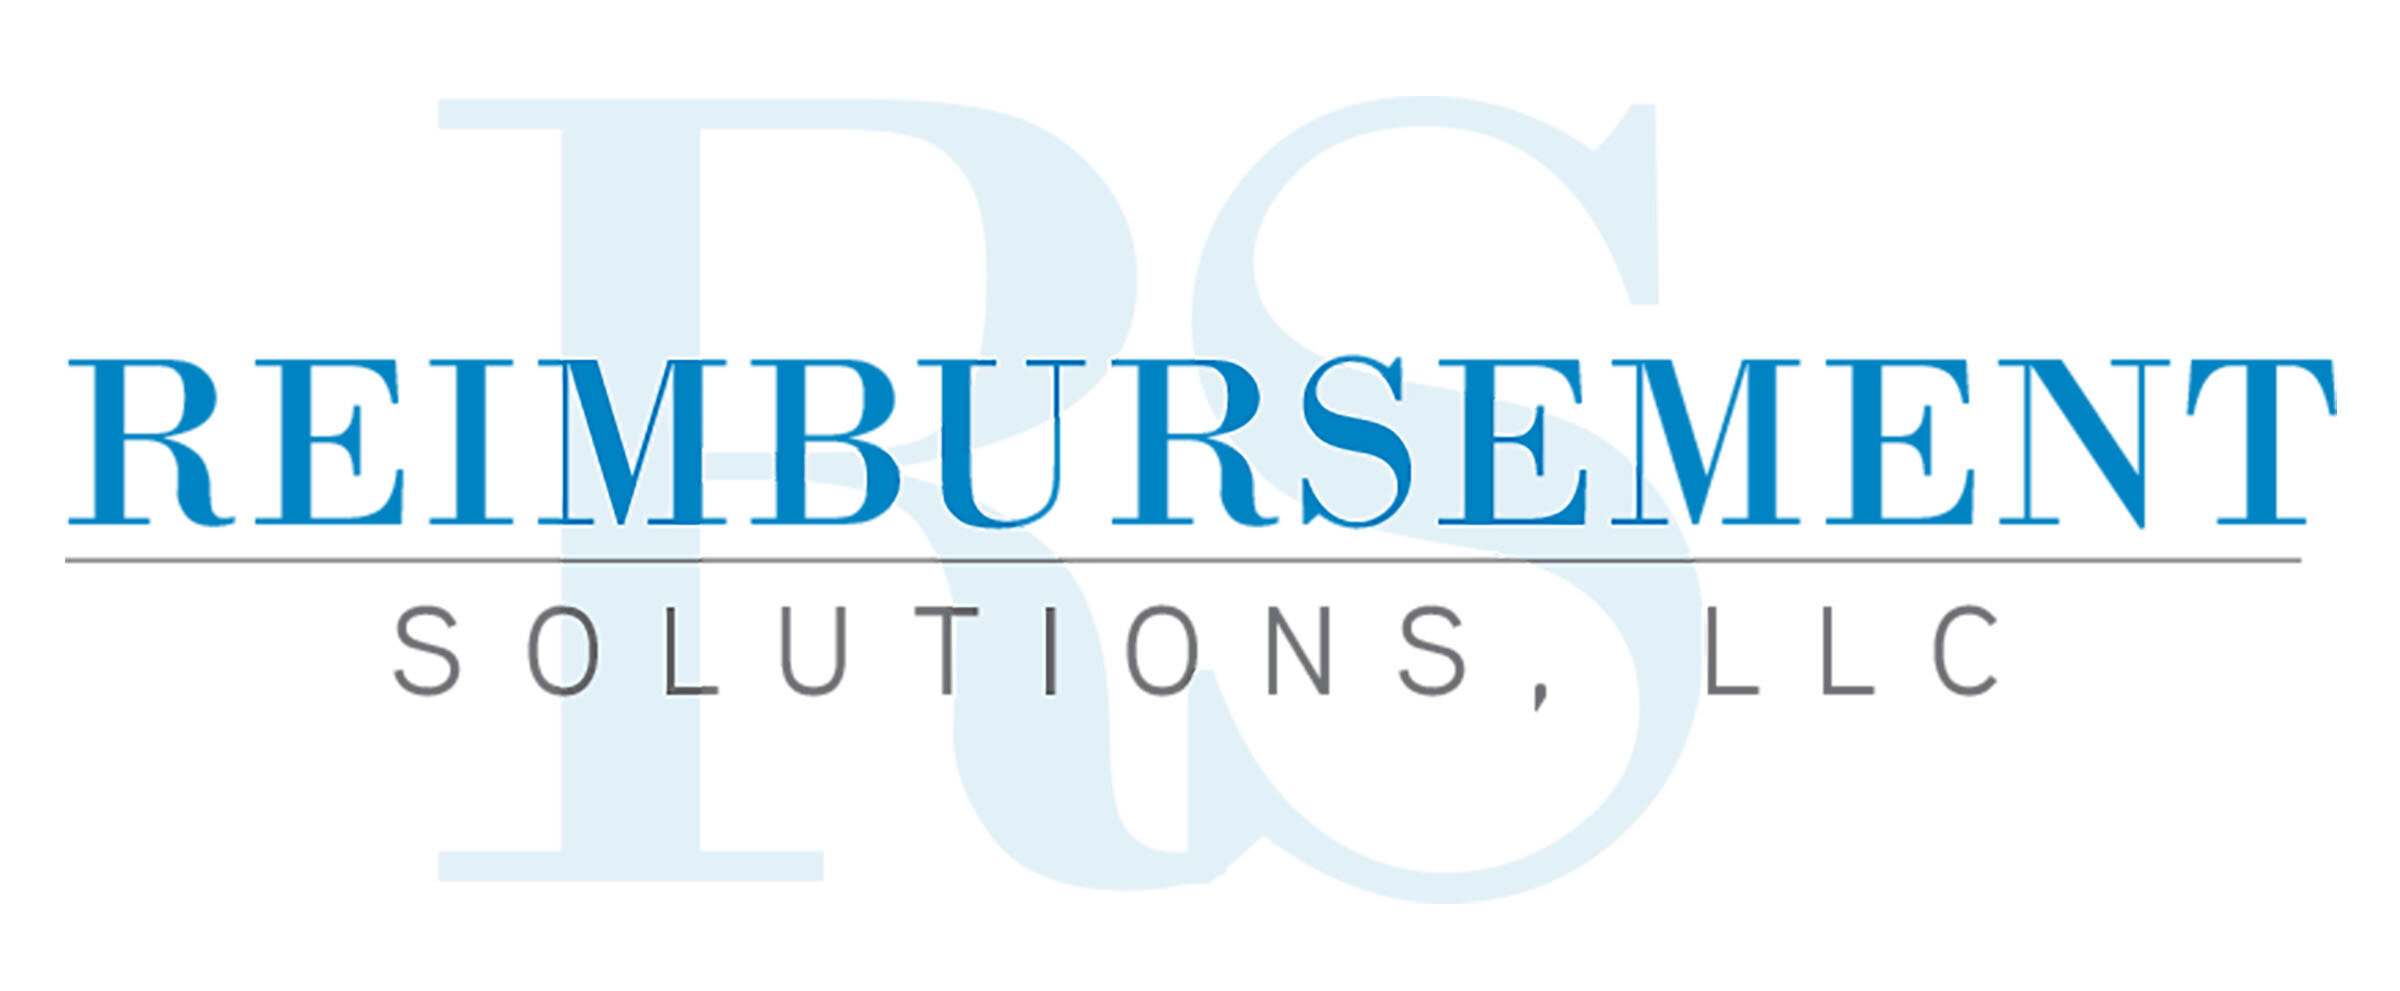 Reimbursement Solutions, LLC